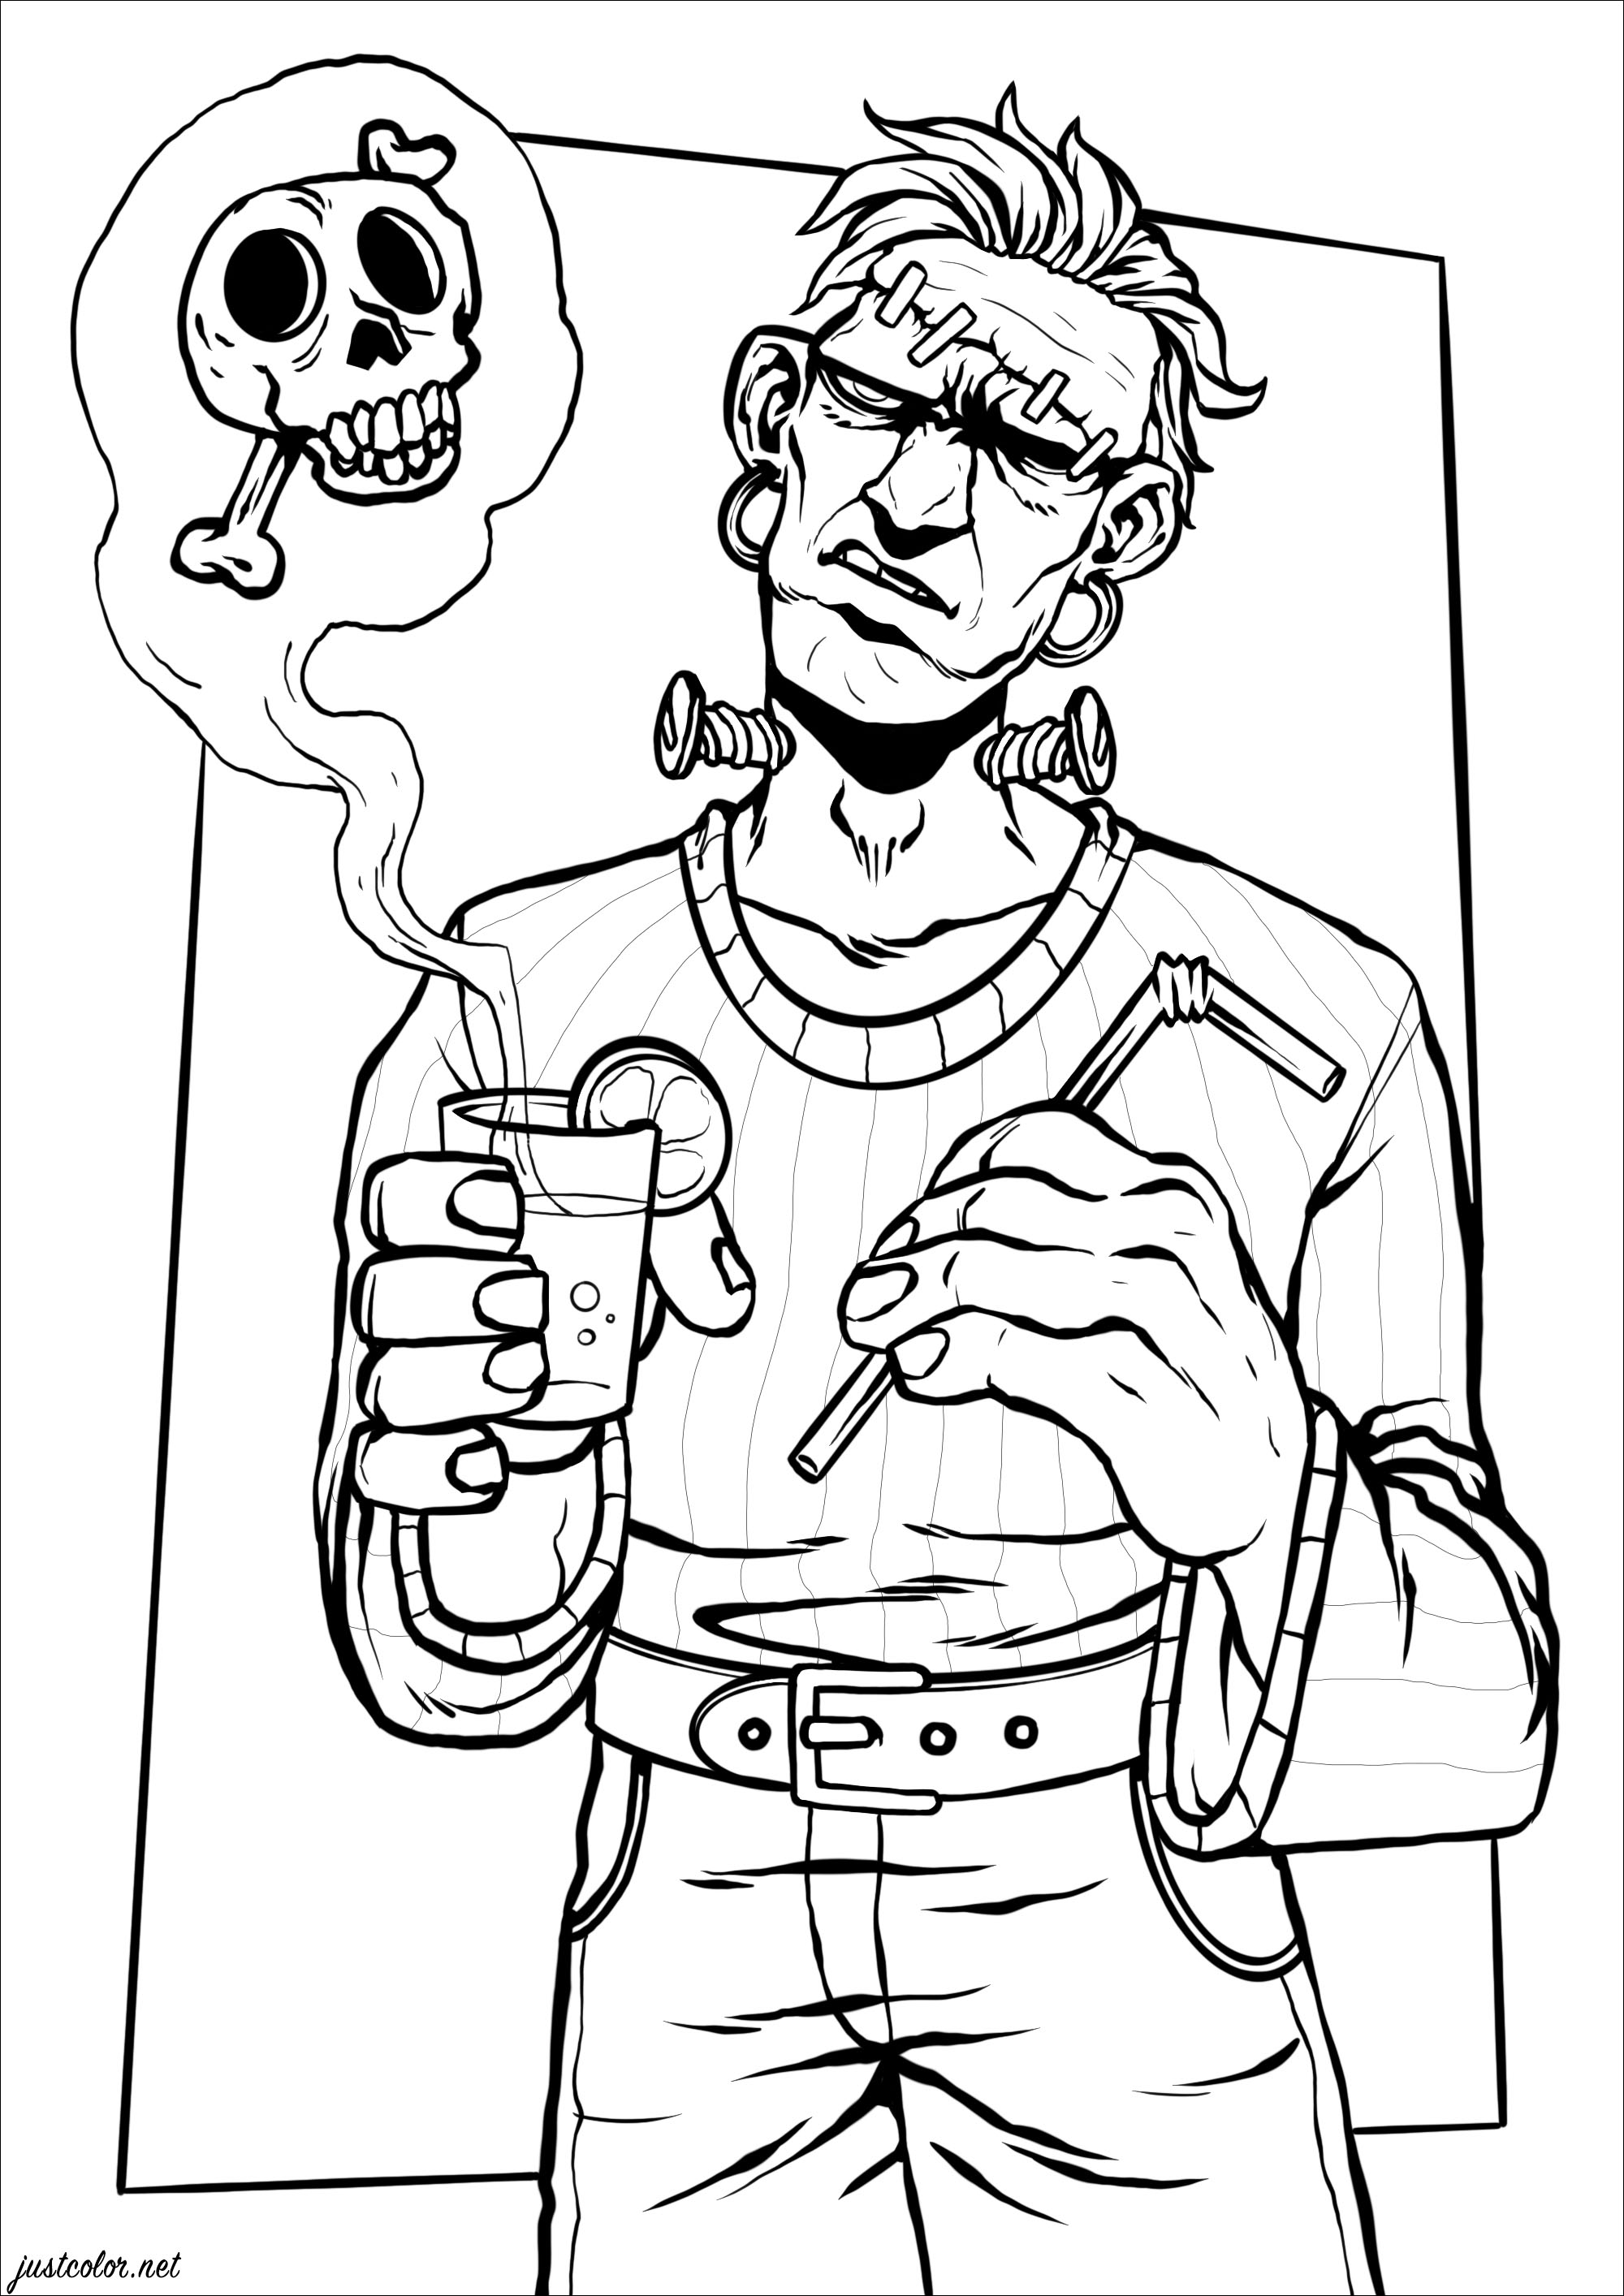 Die berühmte Frankenstein-Kreatur trinkt ein 'tödliches' Getränk!